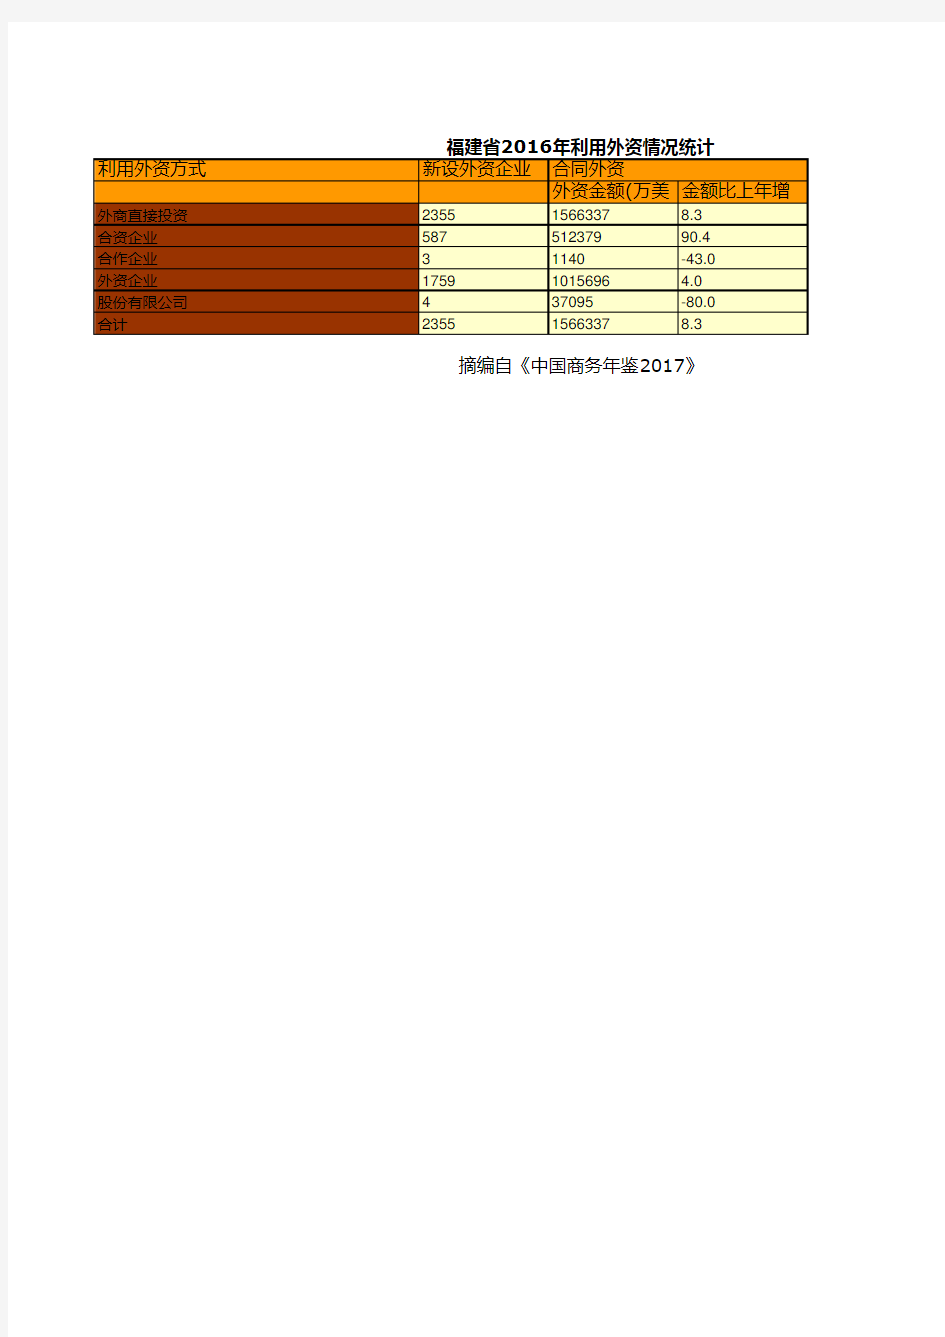 中国商务年鉴2017全国各地省市区数据：福建省2016年利用外资情况统计